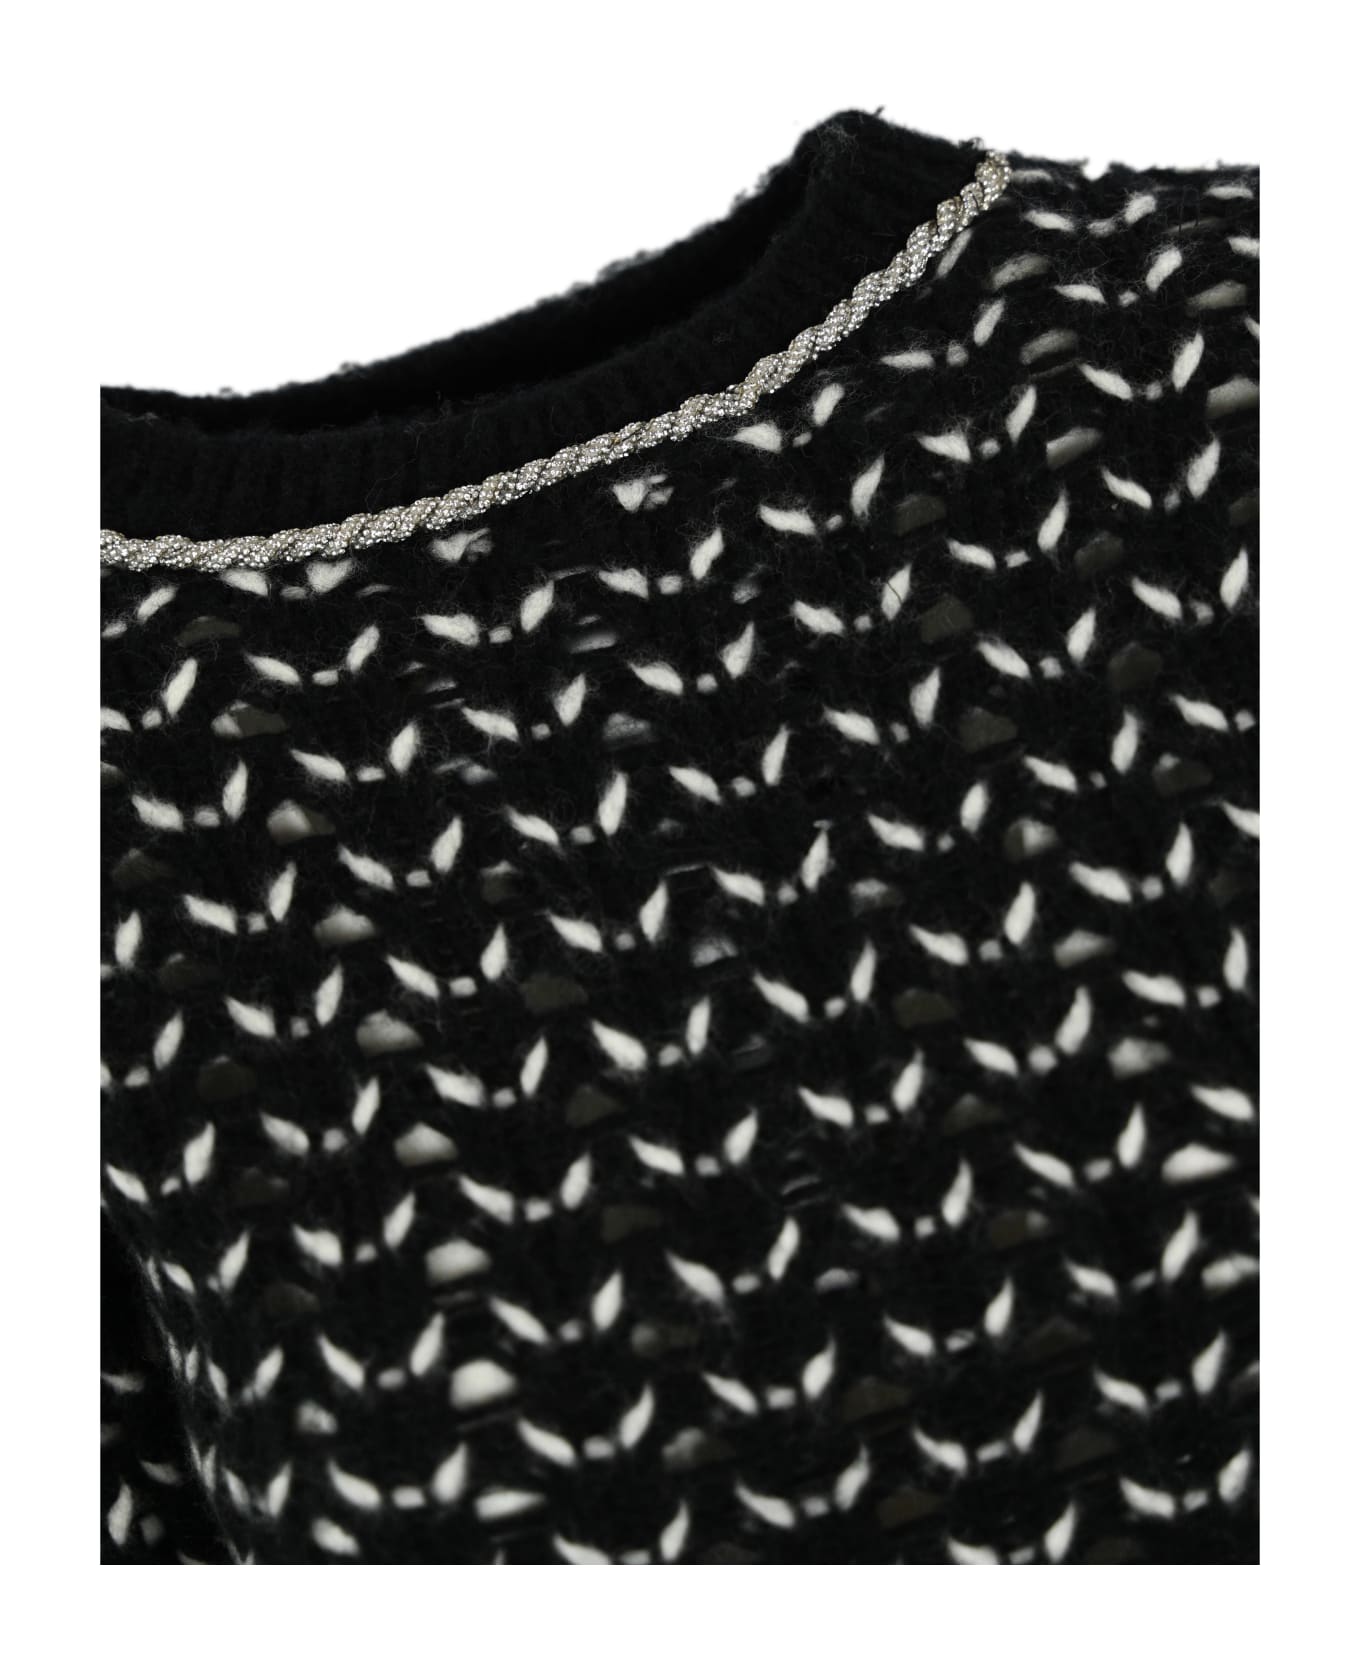 Max Mara Studio Wool Yarn Sweater - Black/white